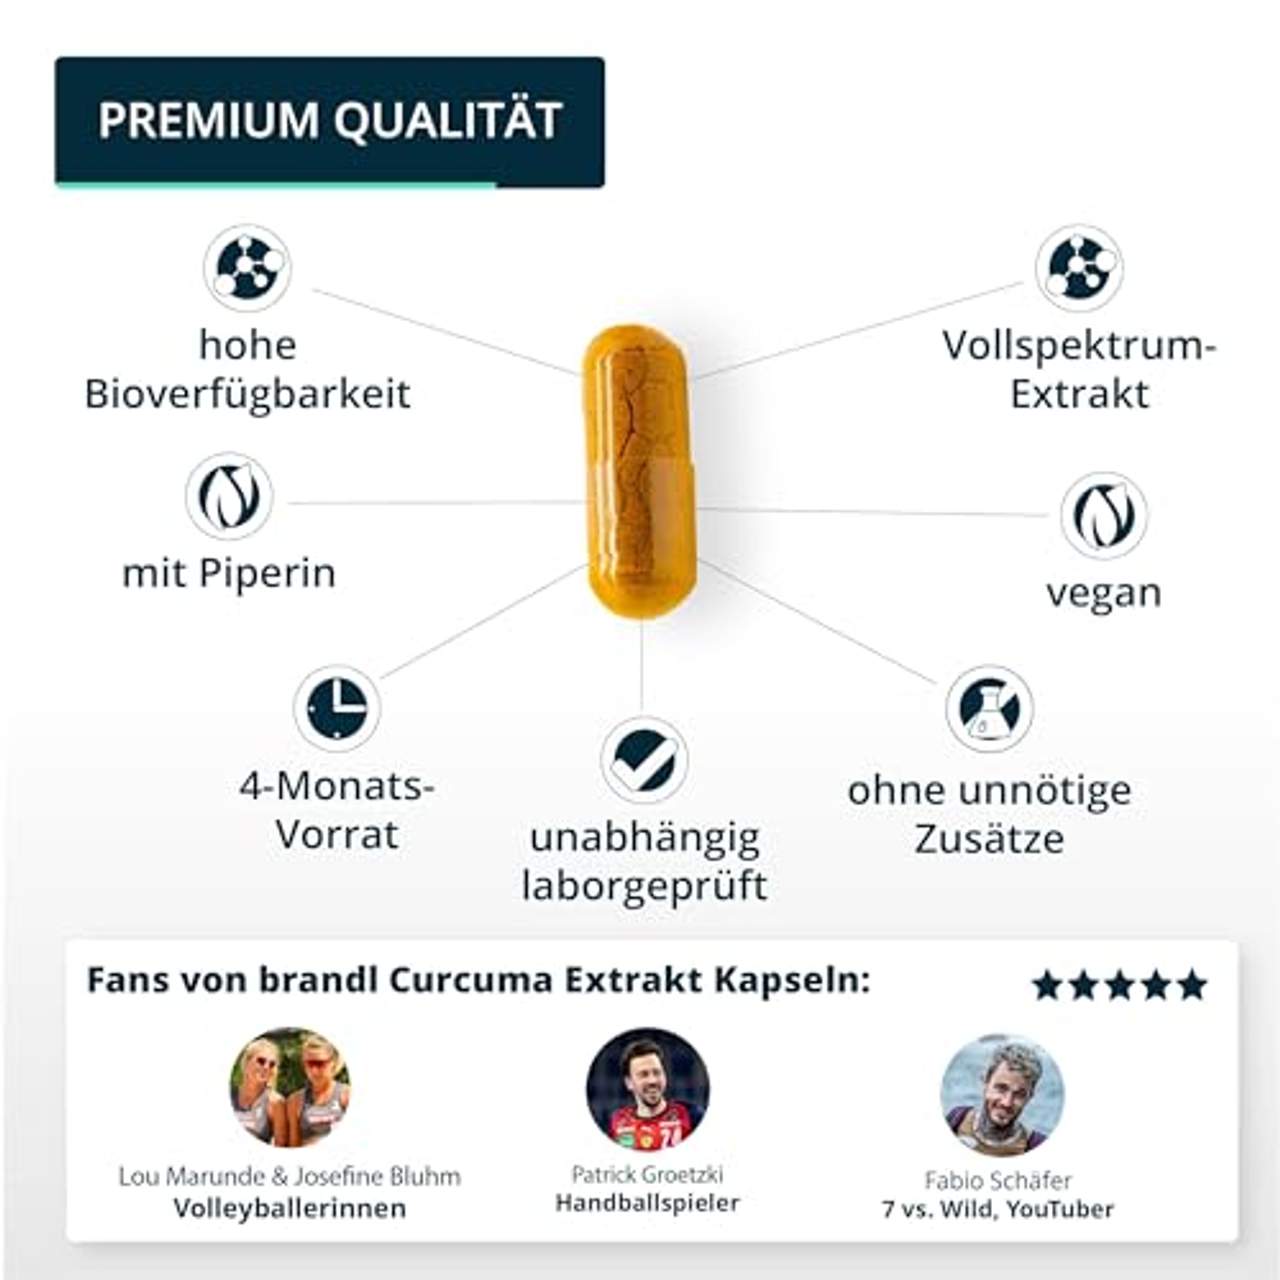 brandl Curcuma-Kapseln mit Curcumin aus Vollspektrum Kurkuma-Extrakt plus Piperin